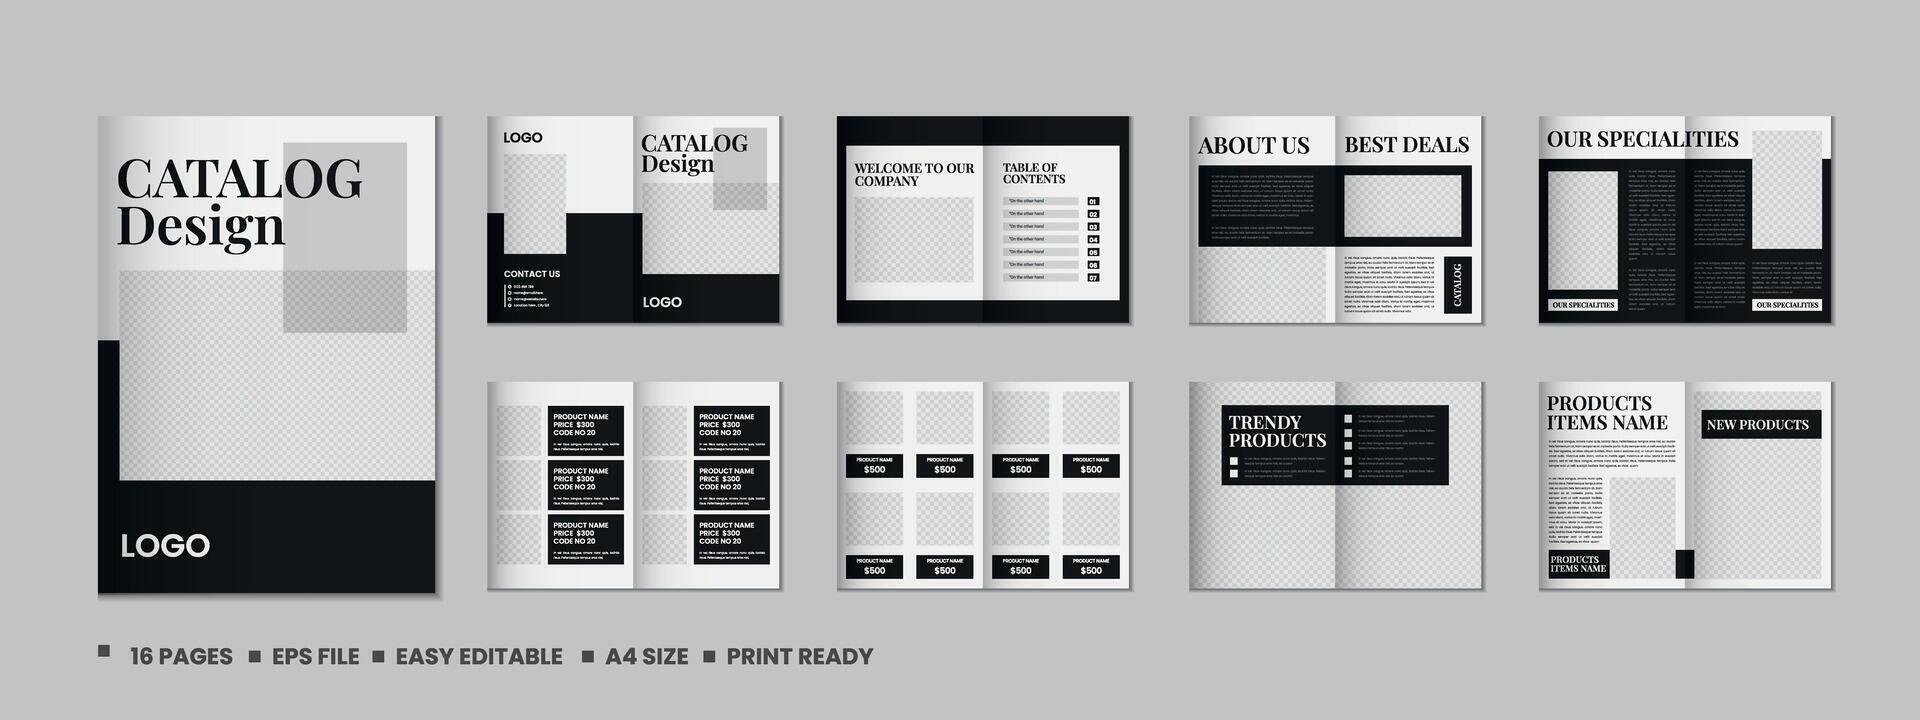 Katalog Design oder Produkt Katalog Vorlage Design vektor